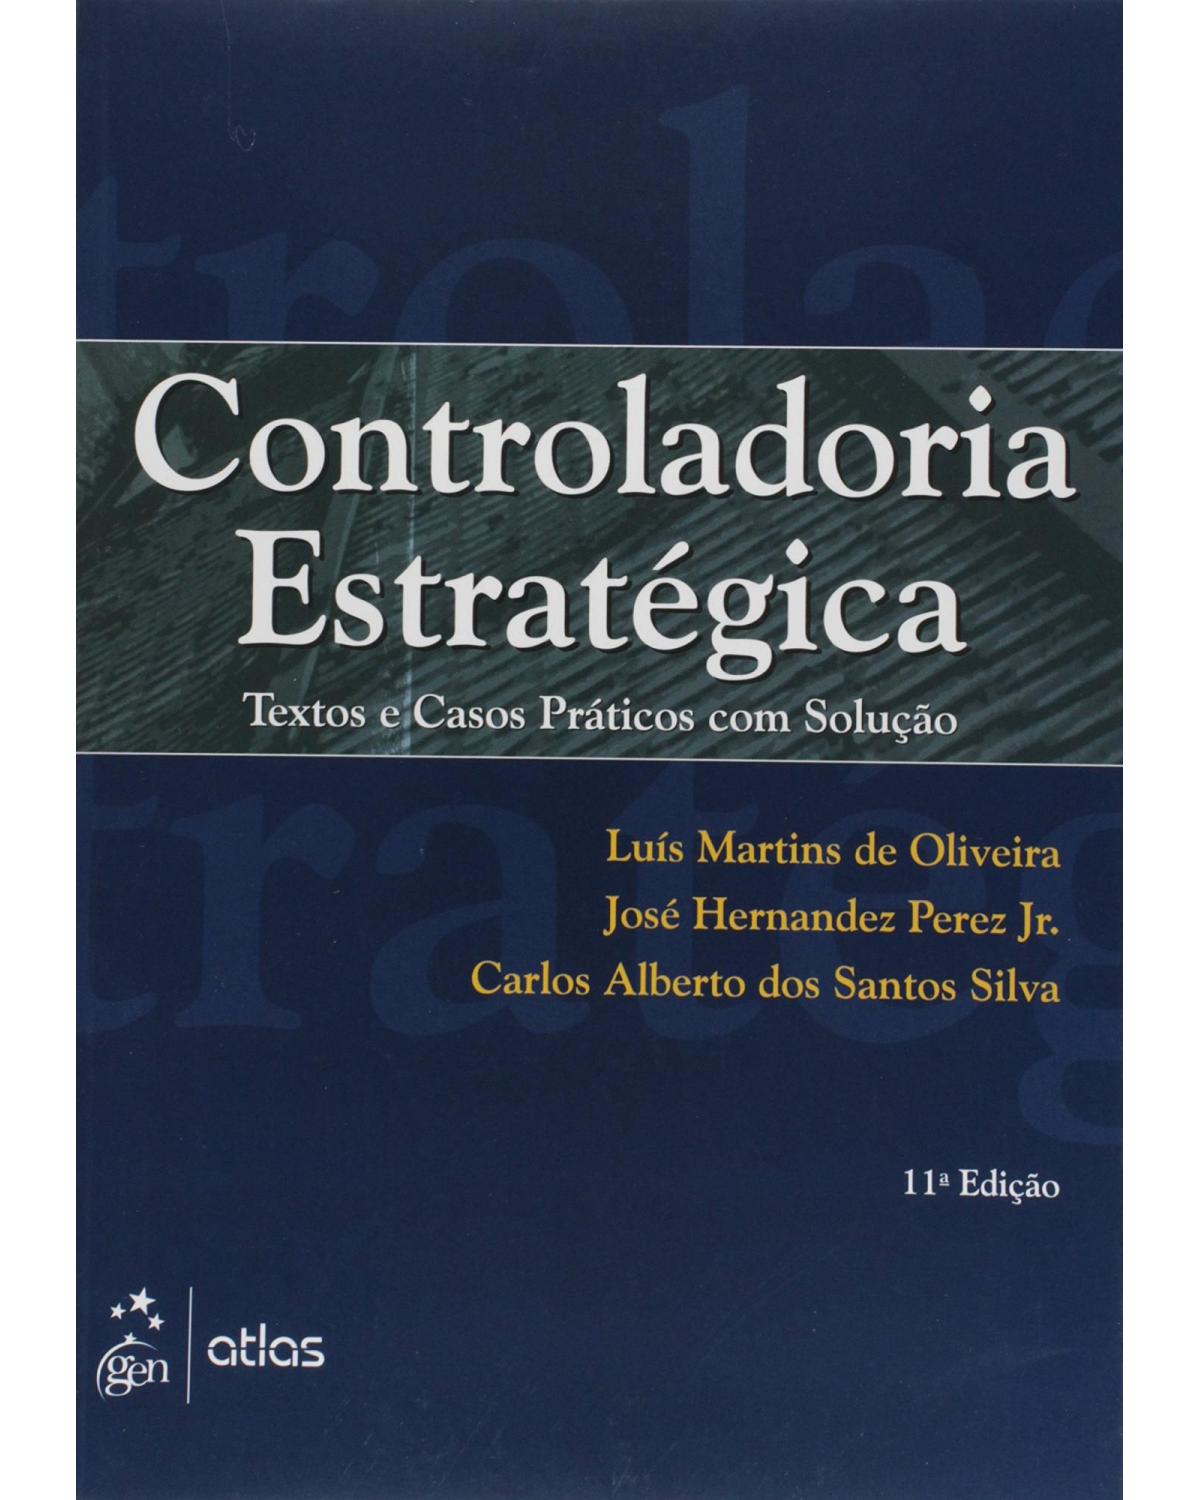 Controladoria estratégica - Textos e casos práticos com solução - 11ª Edição | 2015